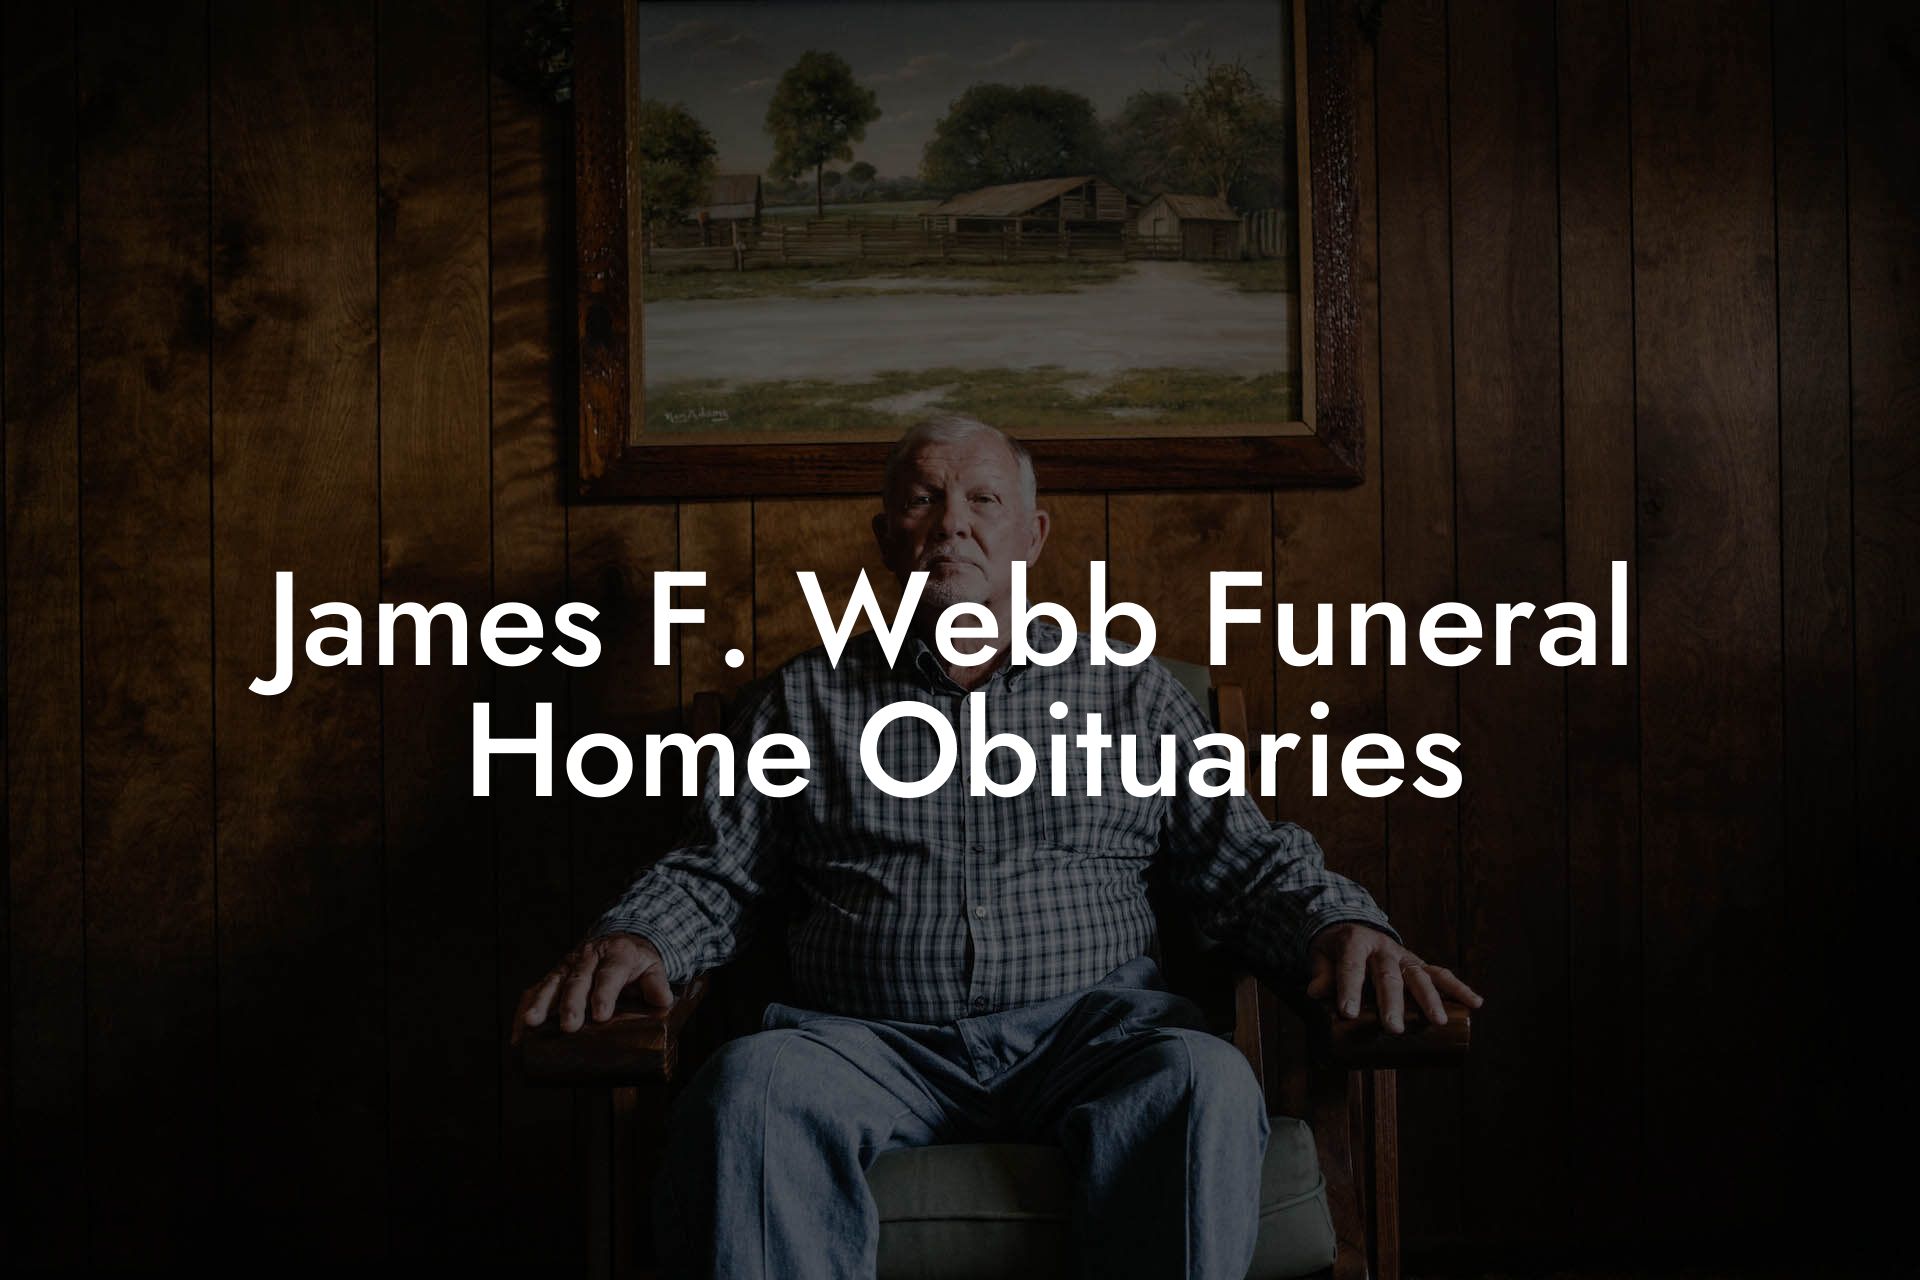 James F. Webb Funeral Home Obituaries